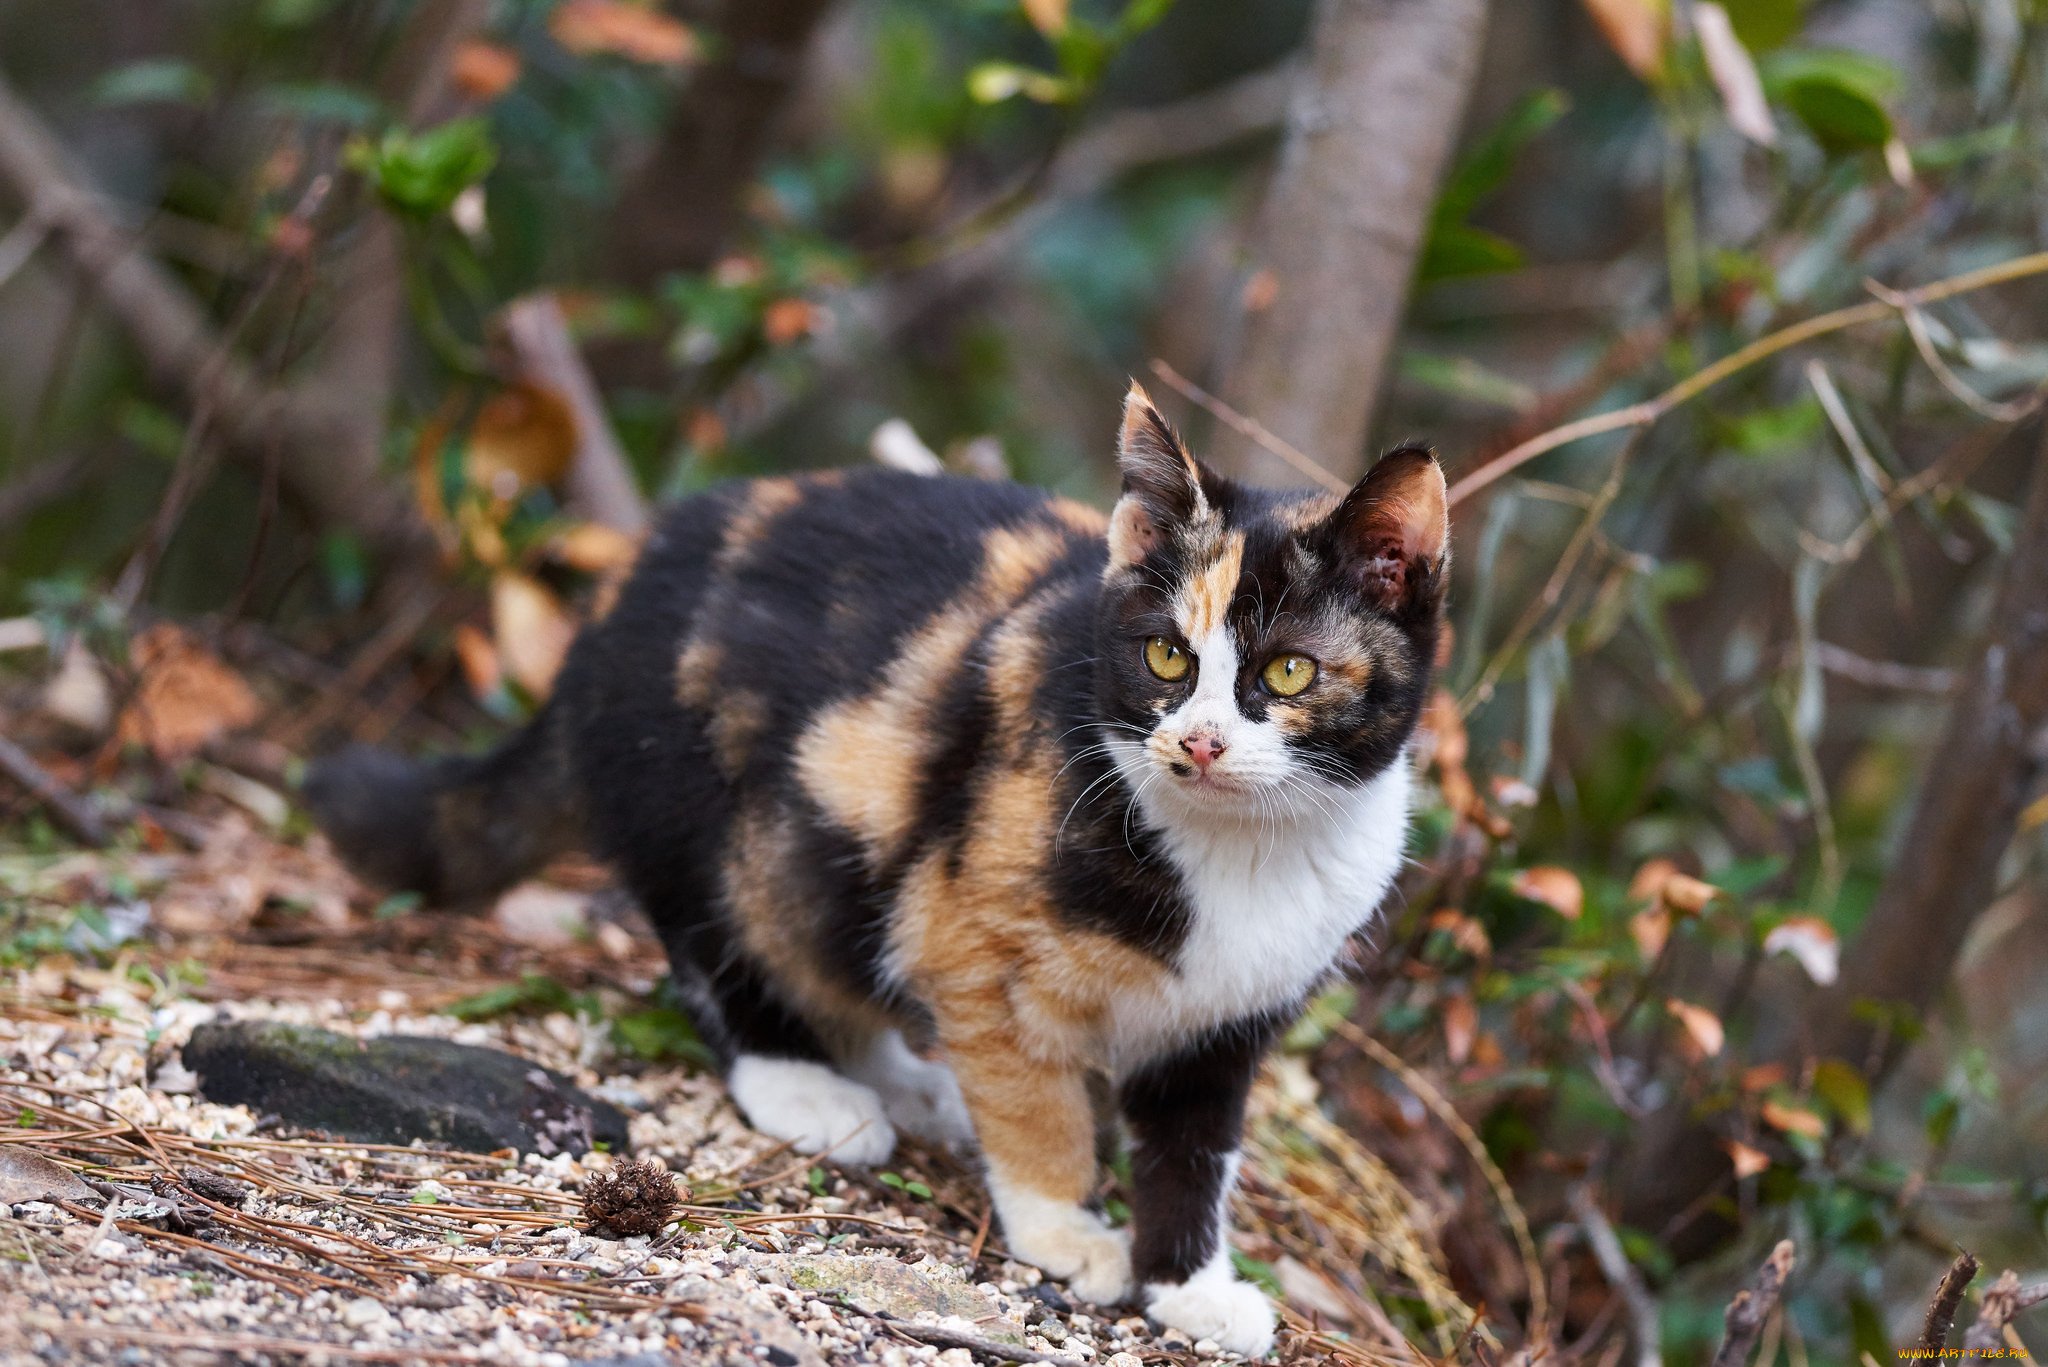 Пестрый кот. Черепаховая кошка Калико. Трёхцветная кошка Арлекин. Трёхцветная Сибирская кошка Арлекин. Трехцветные кошки Калико.